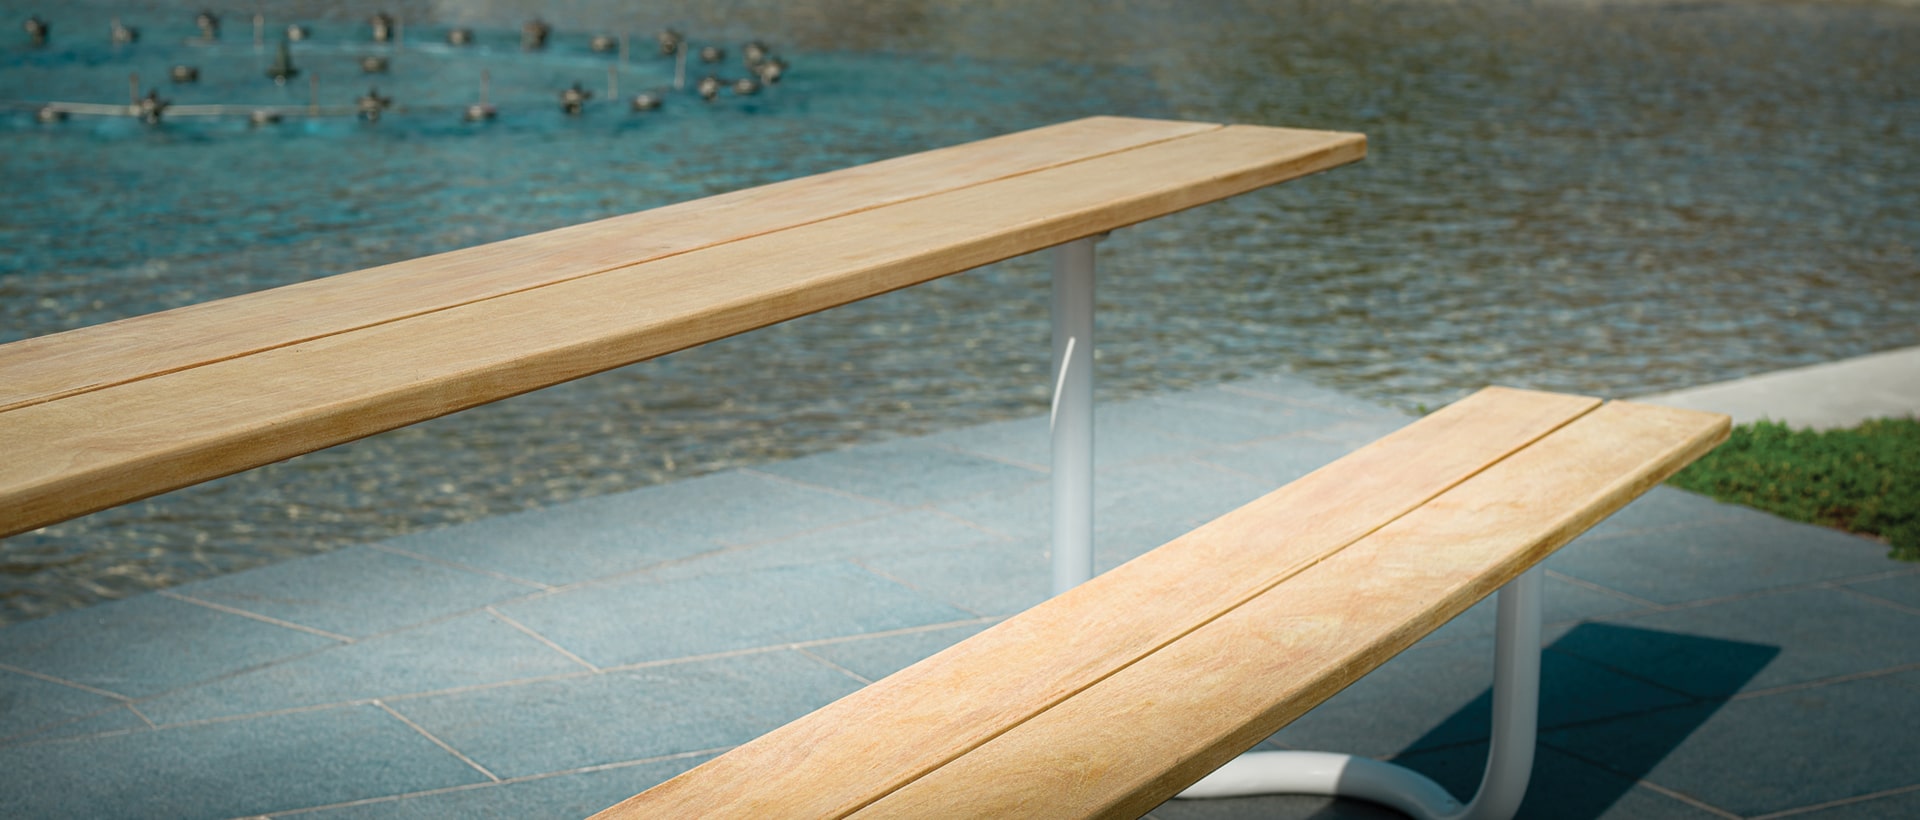 Table de pique-nique en tube d'acier fabriqué par CYRIA concepteur de mobilier urbain design pour espace collectif et aménagement public